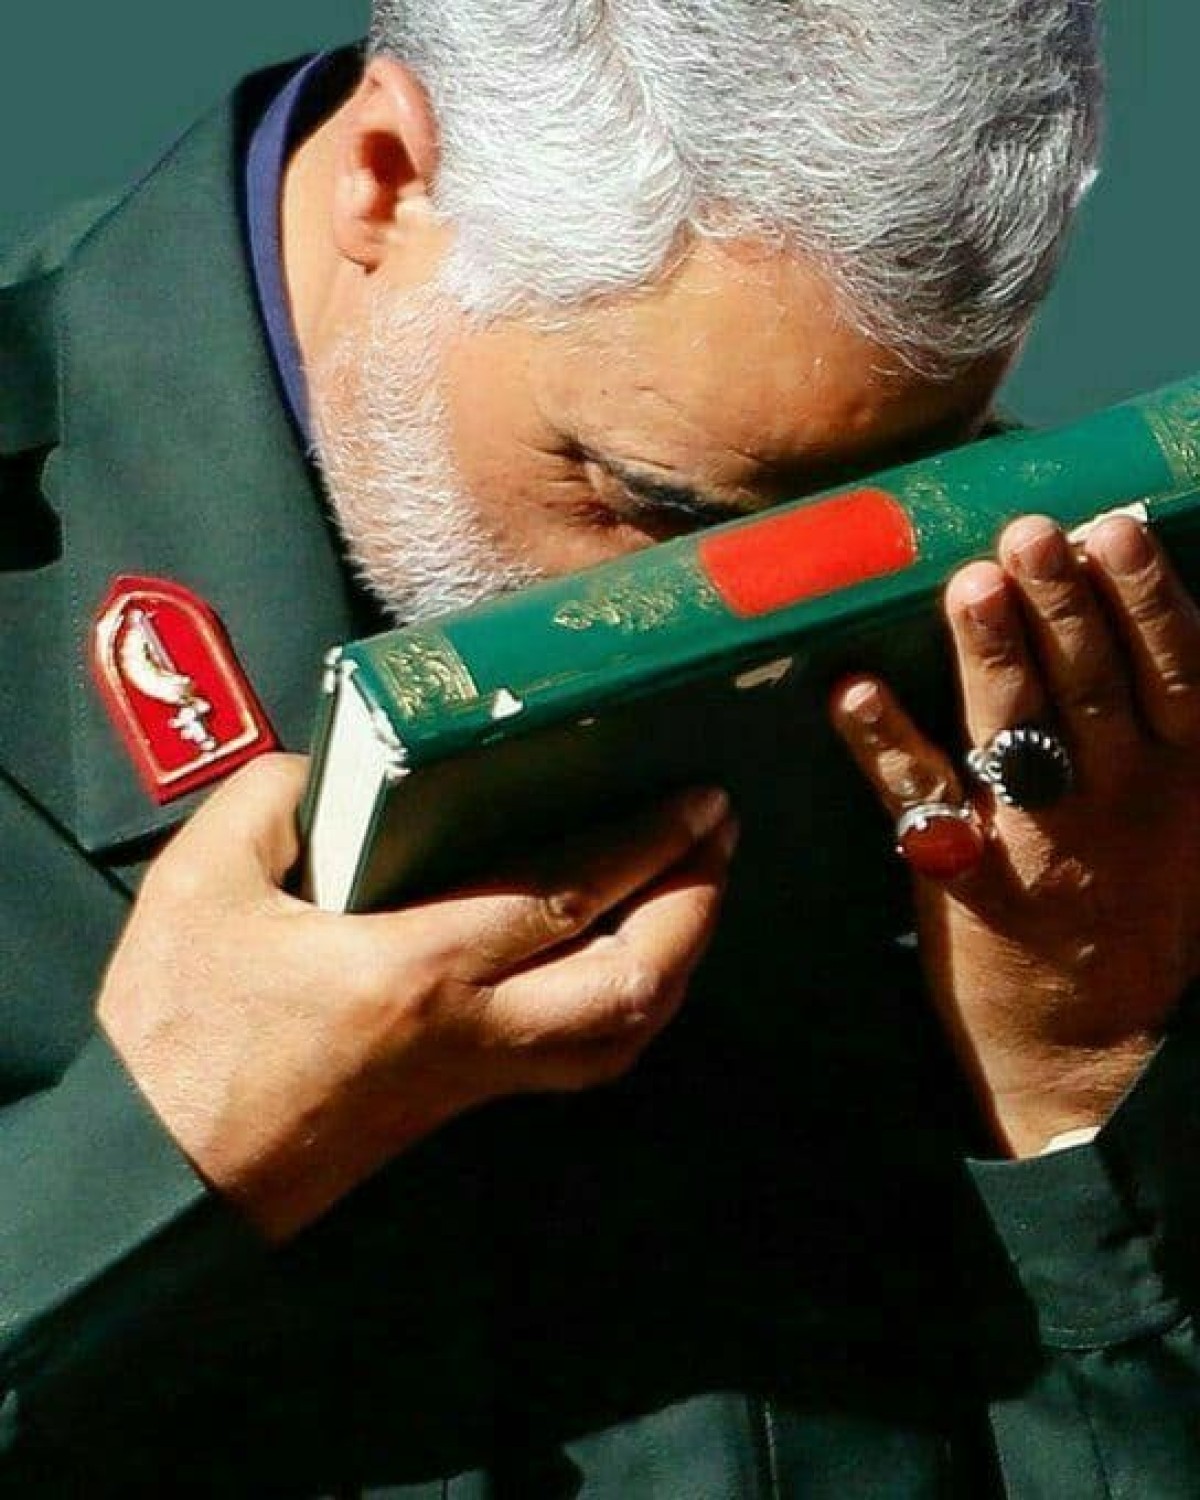  ” الجنرال الإيراني الذي ملأ الفراغ الديني في العلاقات الدولية “